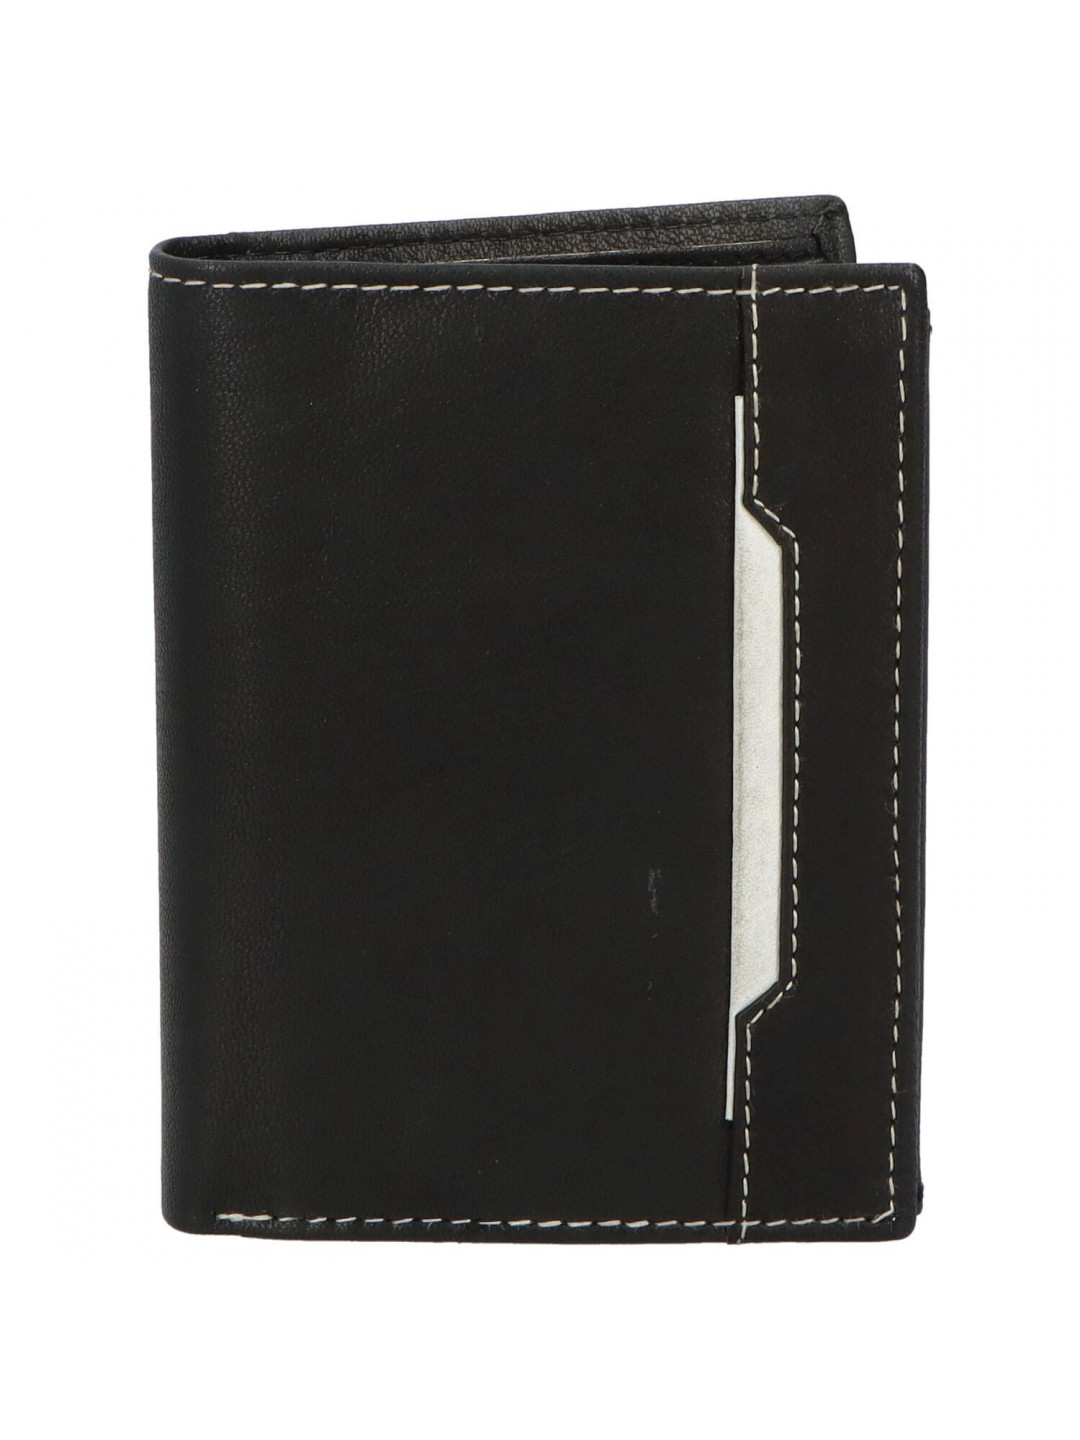 Trendová pánská kožená peněženka Vero černo – bílá